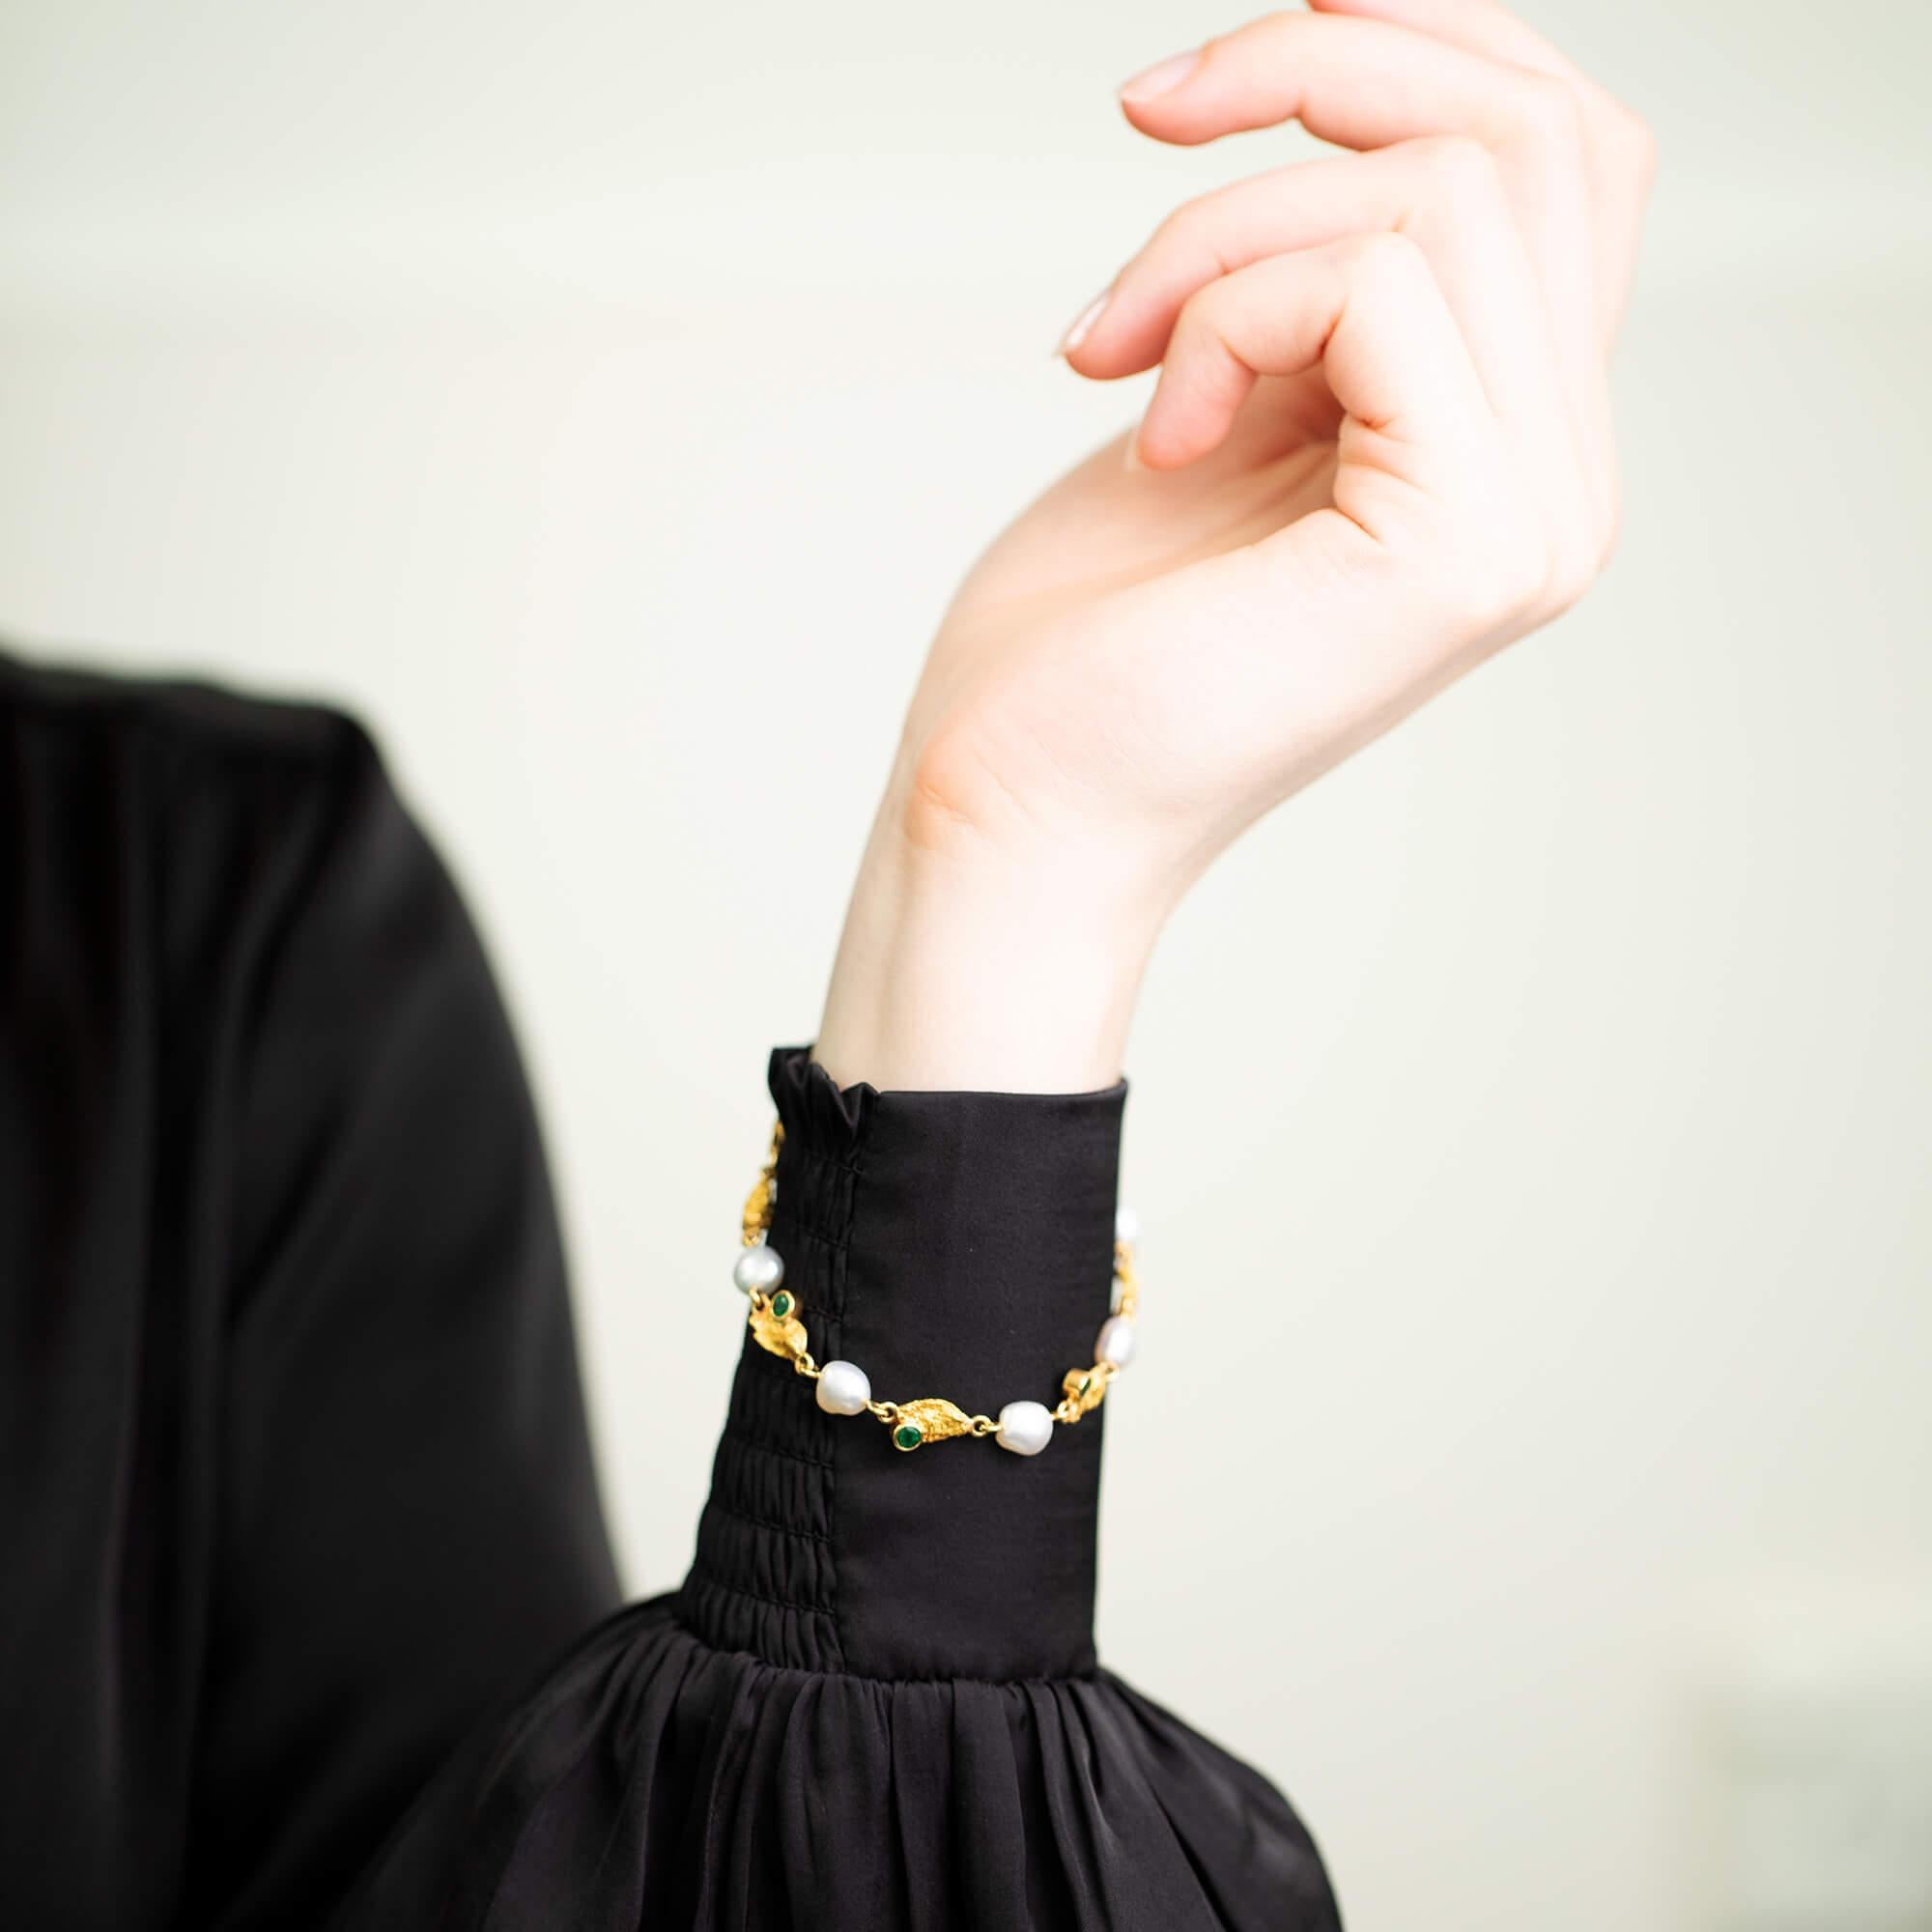 Dieses einzigartige, moderne Armband besteht aus acht Goldnuggets, von denen vier mit natürlichen grünen Smaragden besetzt sind. Zwischen jedem Goldnugget befindet sich eine Keshi-Perle, die das Armband als Ganzes verbindet. Mit einer goldenen